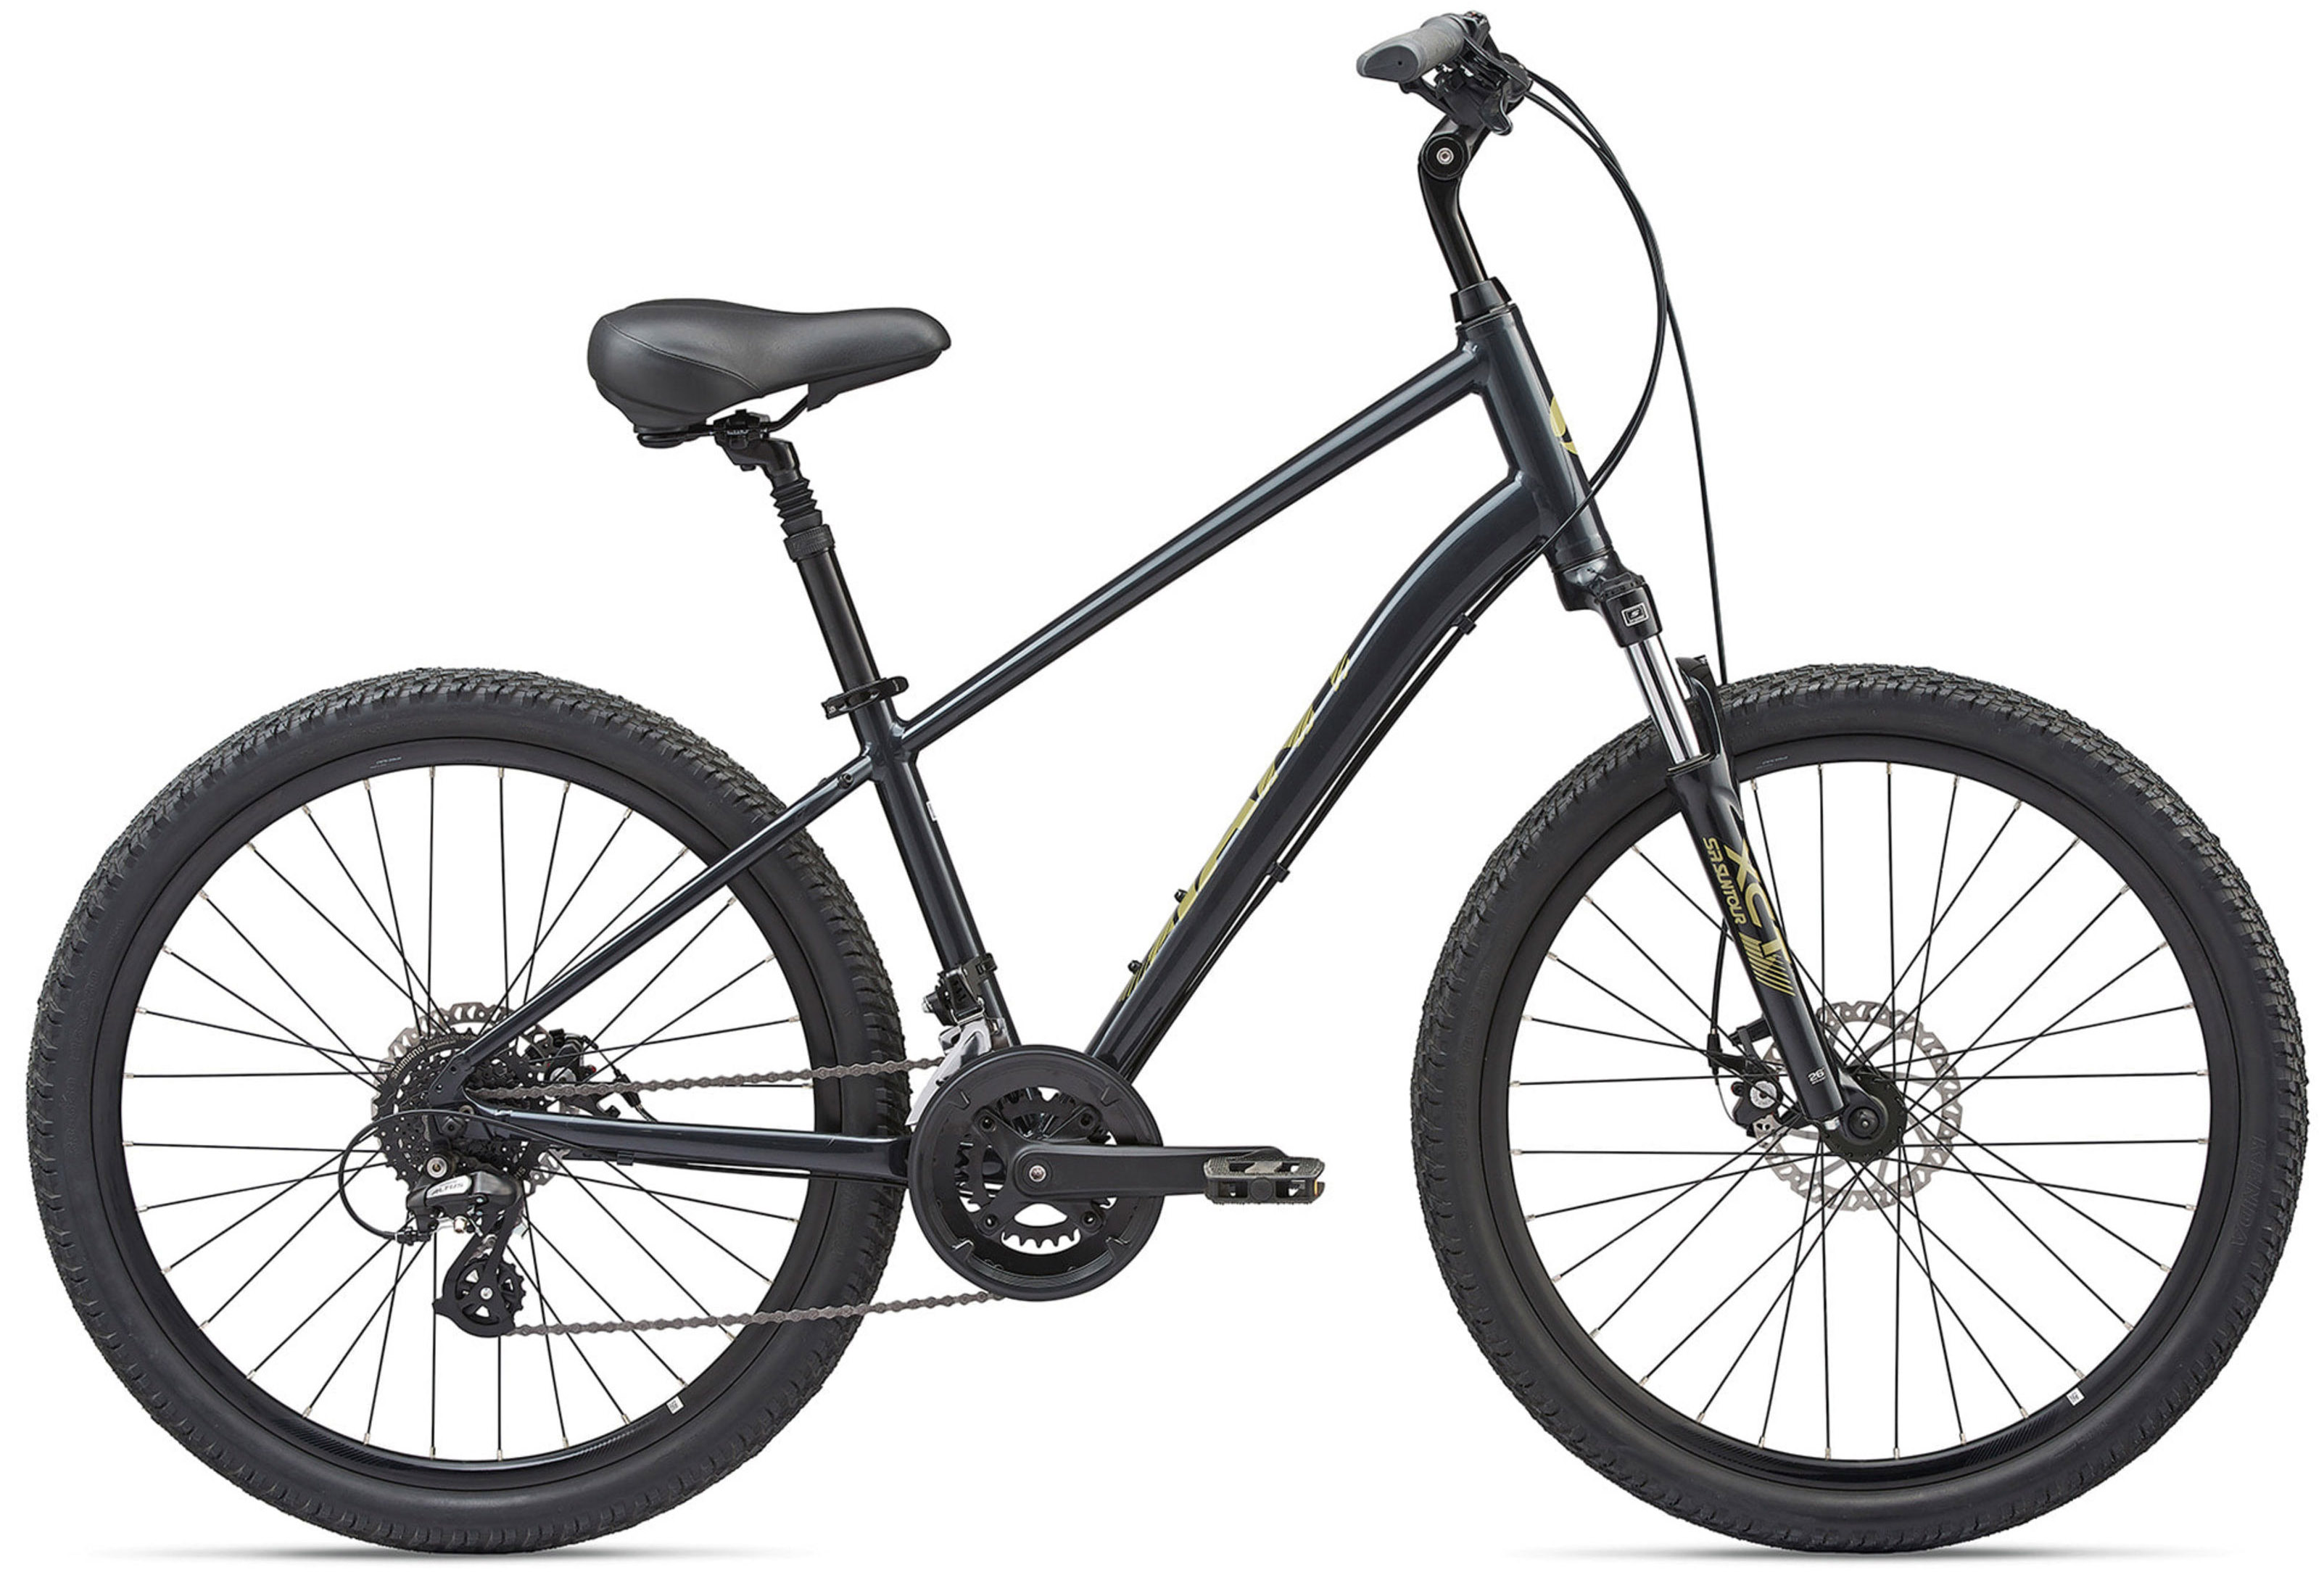  Отзывы о Городском велосипеде Giant Sedona DX (2021) 2021